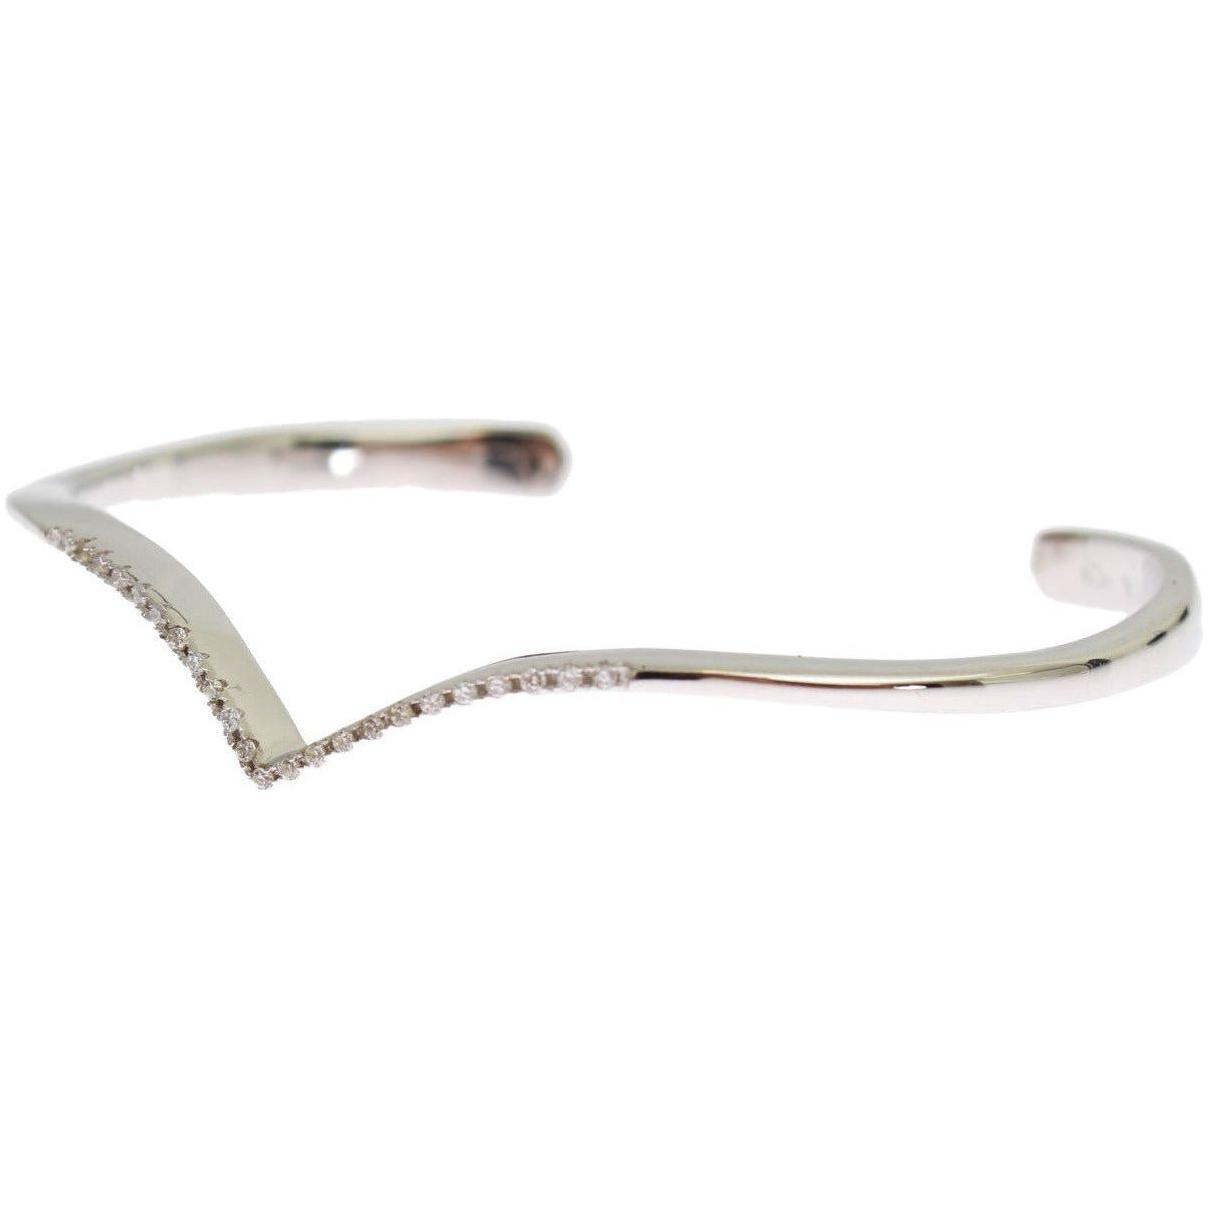 Nialaya Elegant Silver Bangle Cuff with Clear CZ Accents Bracelet skyfall-cz-925-silver-bangle-bracelet 85137-skyfall-cz-925-silver-bangle-bracelet-1_28168024-1de1-4a80-a96d-0621975c4a8f.jpg